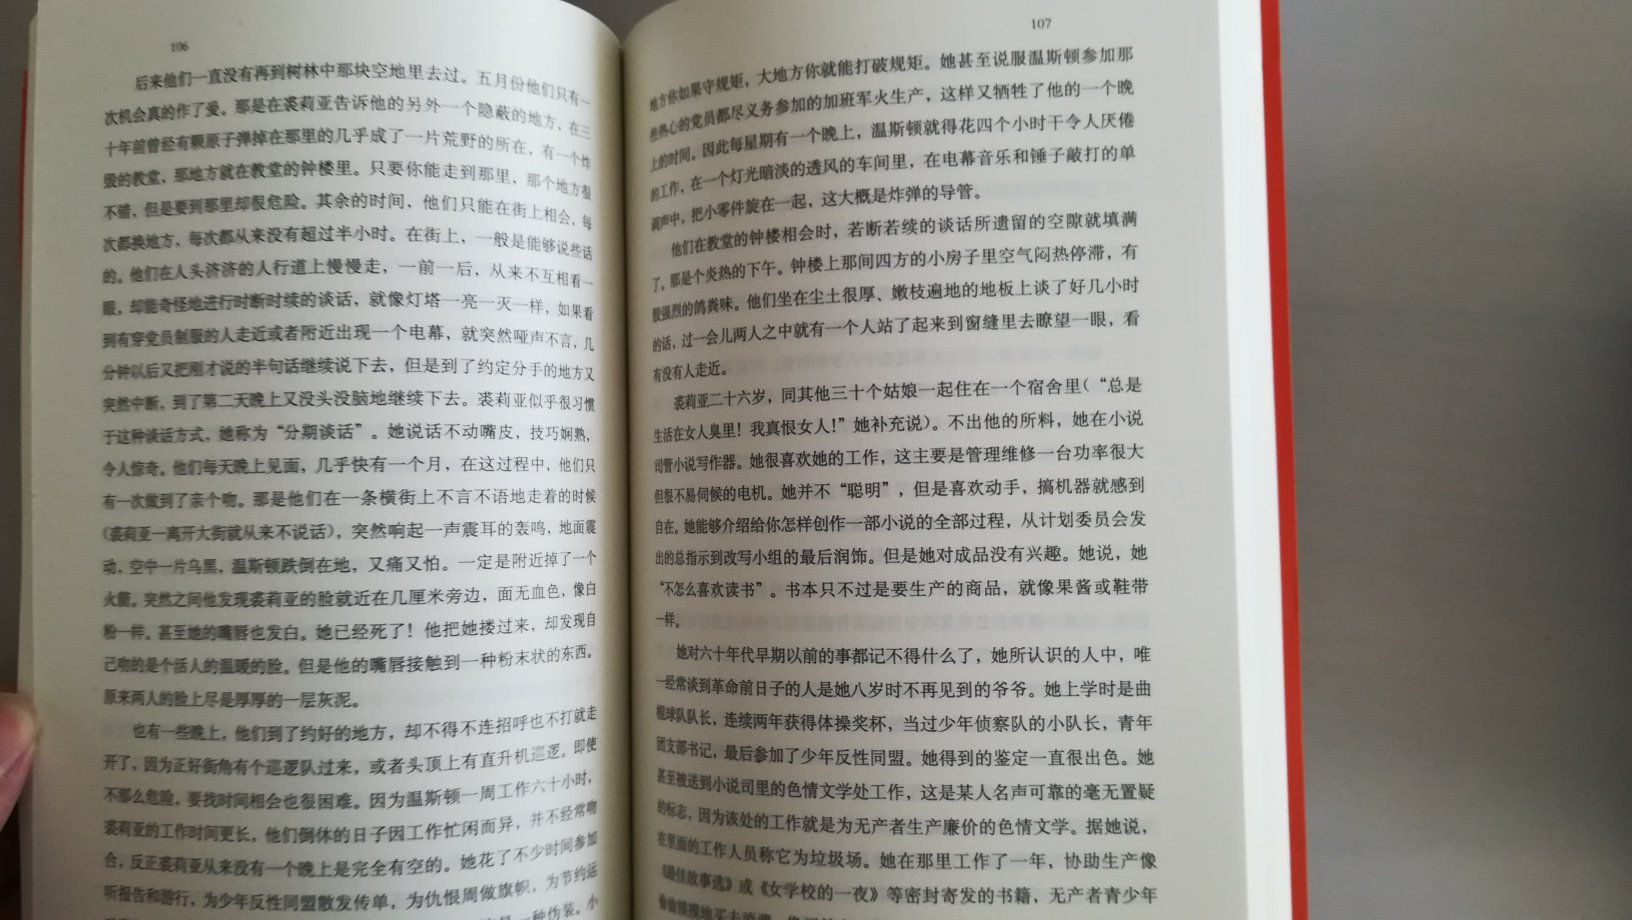 译文的书较为经典，装帧朴实，书角有点皱。